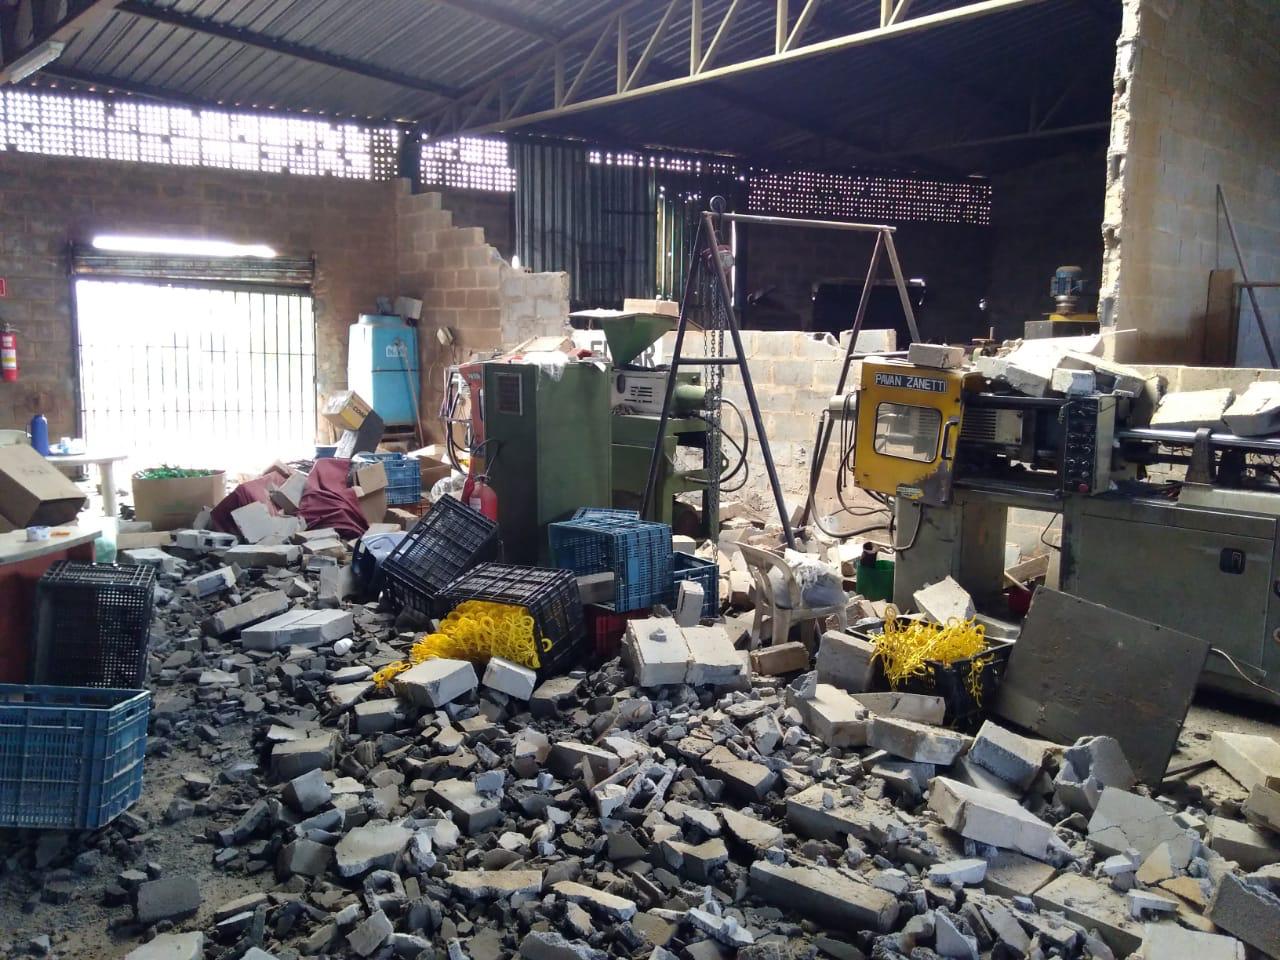 Uma empresa de injeção e transformação de plástico ficou parcialmente destruída após a chuva deste domingo (24), em Aparecida de Goiânia. (Foto: Reprodução)